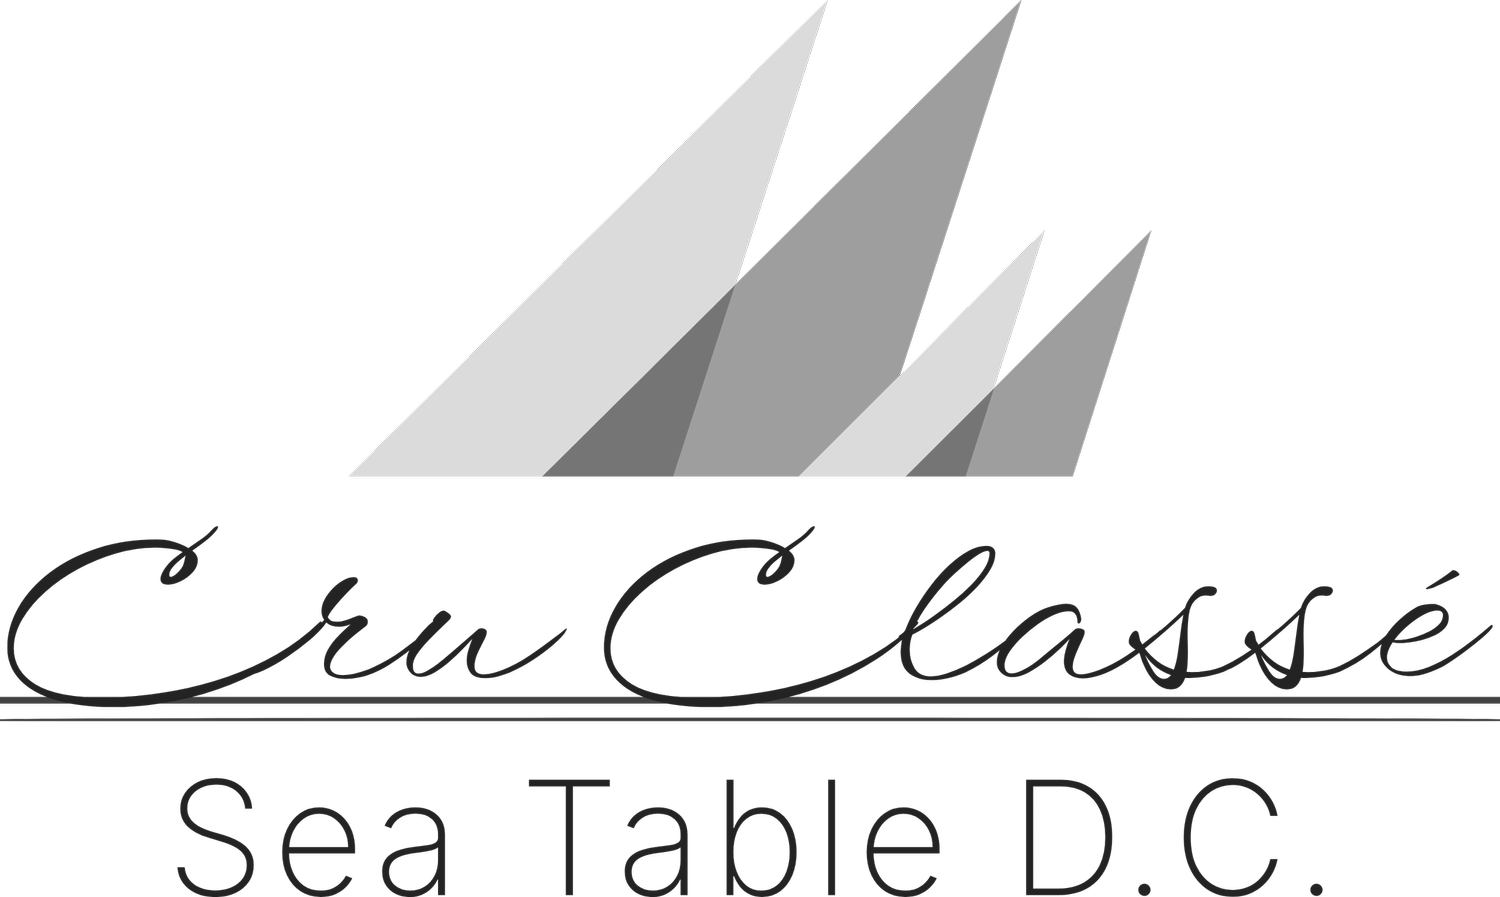 Cru Classé - Sea Table D.C.